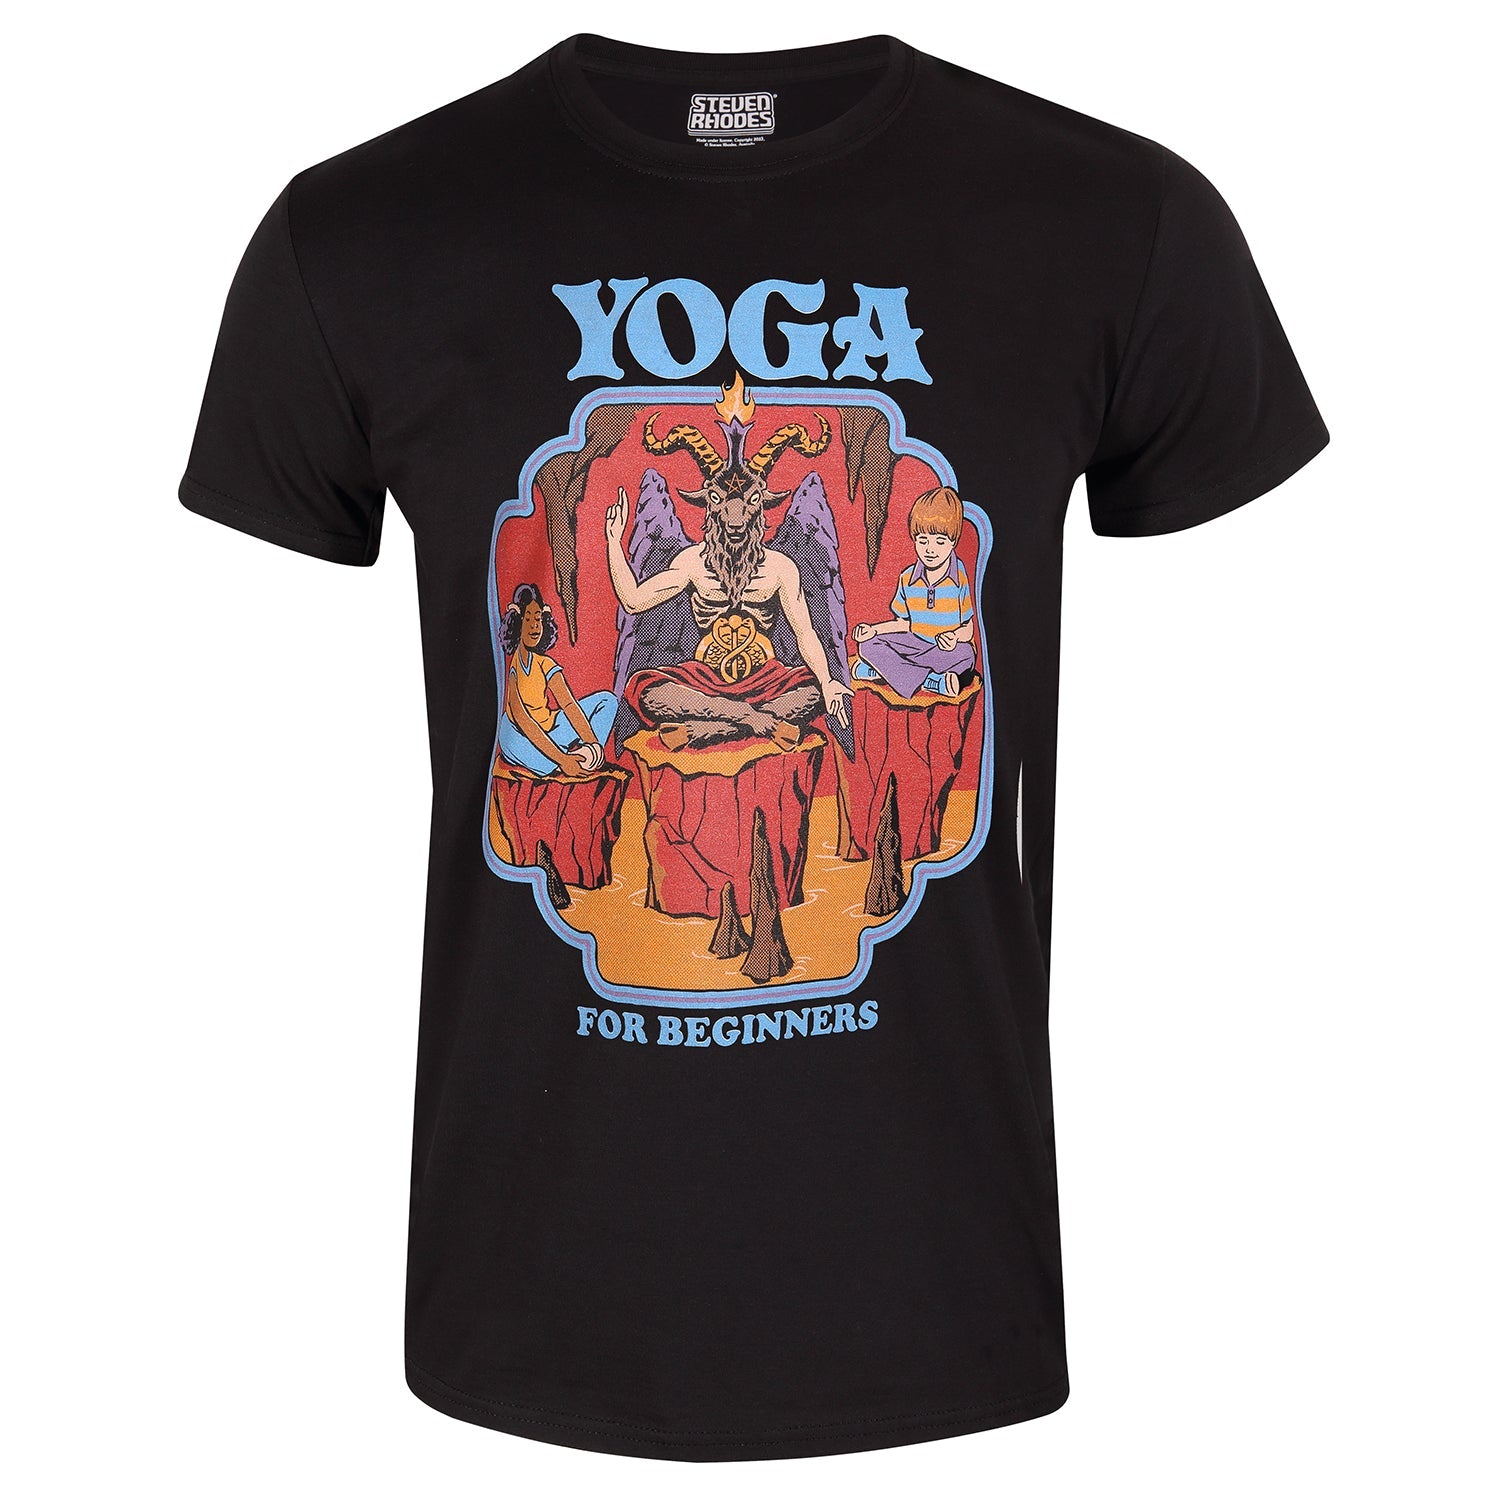 Steven Rhodes Yoga For Beginners T-Shirt